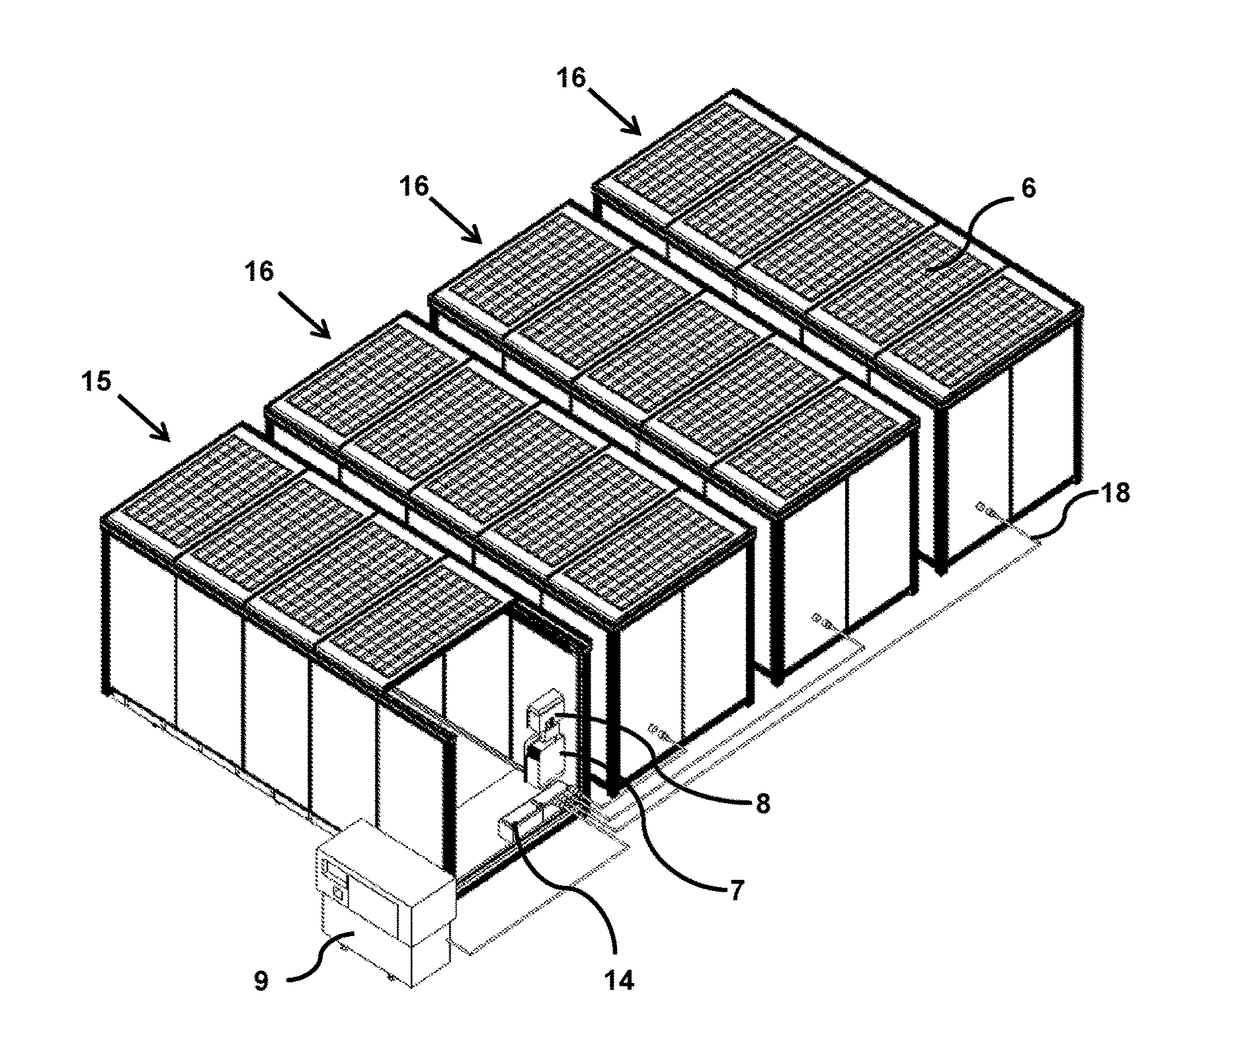 Portable modular shelter apparatus